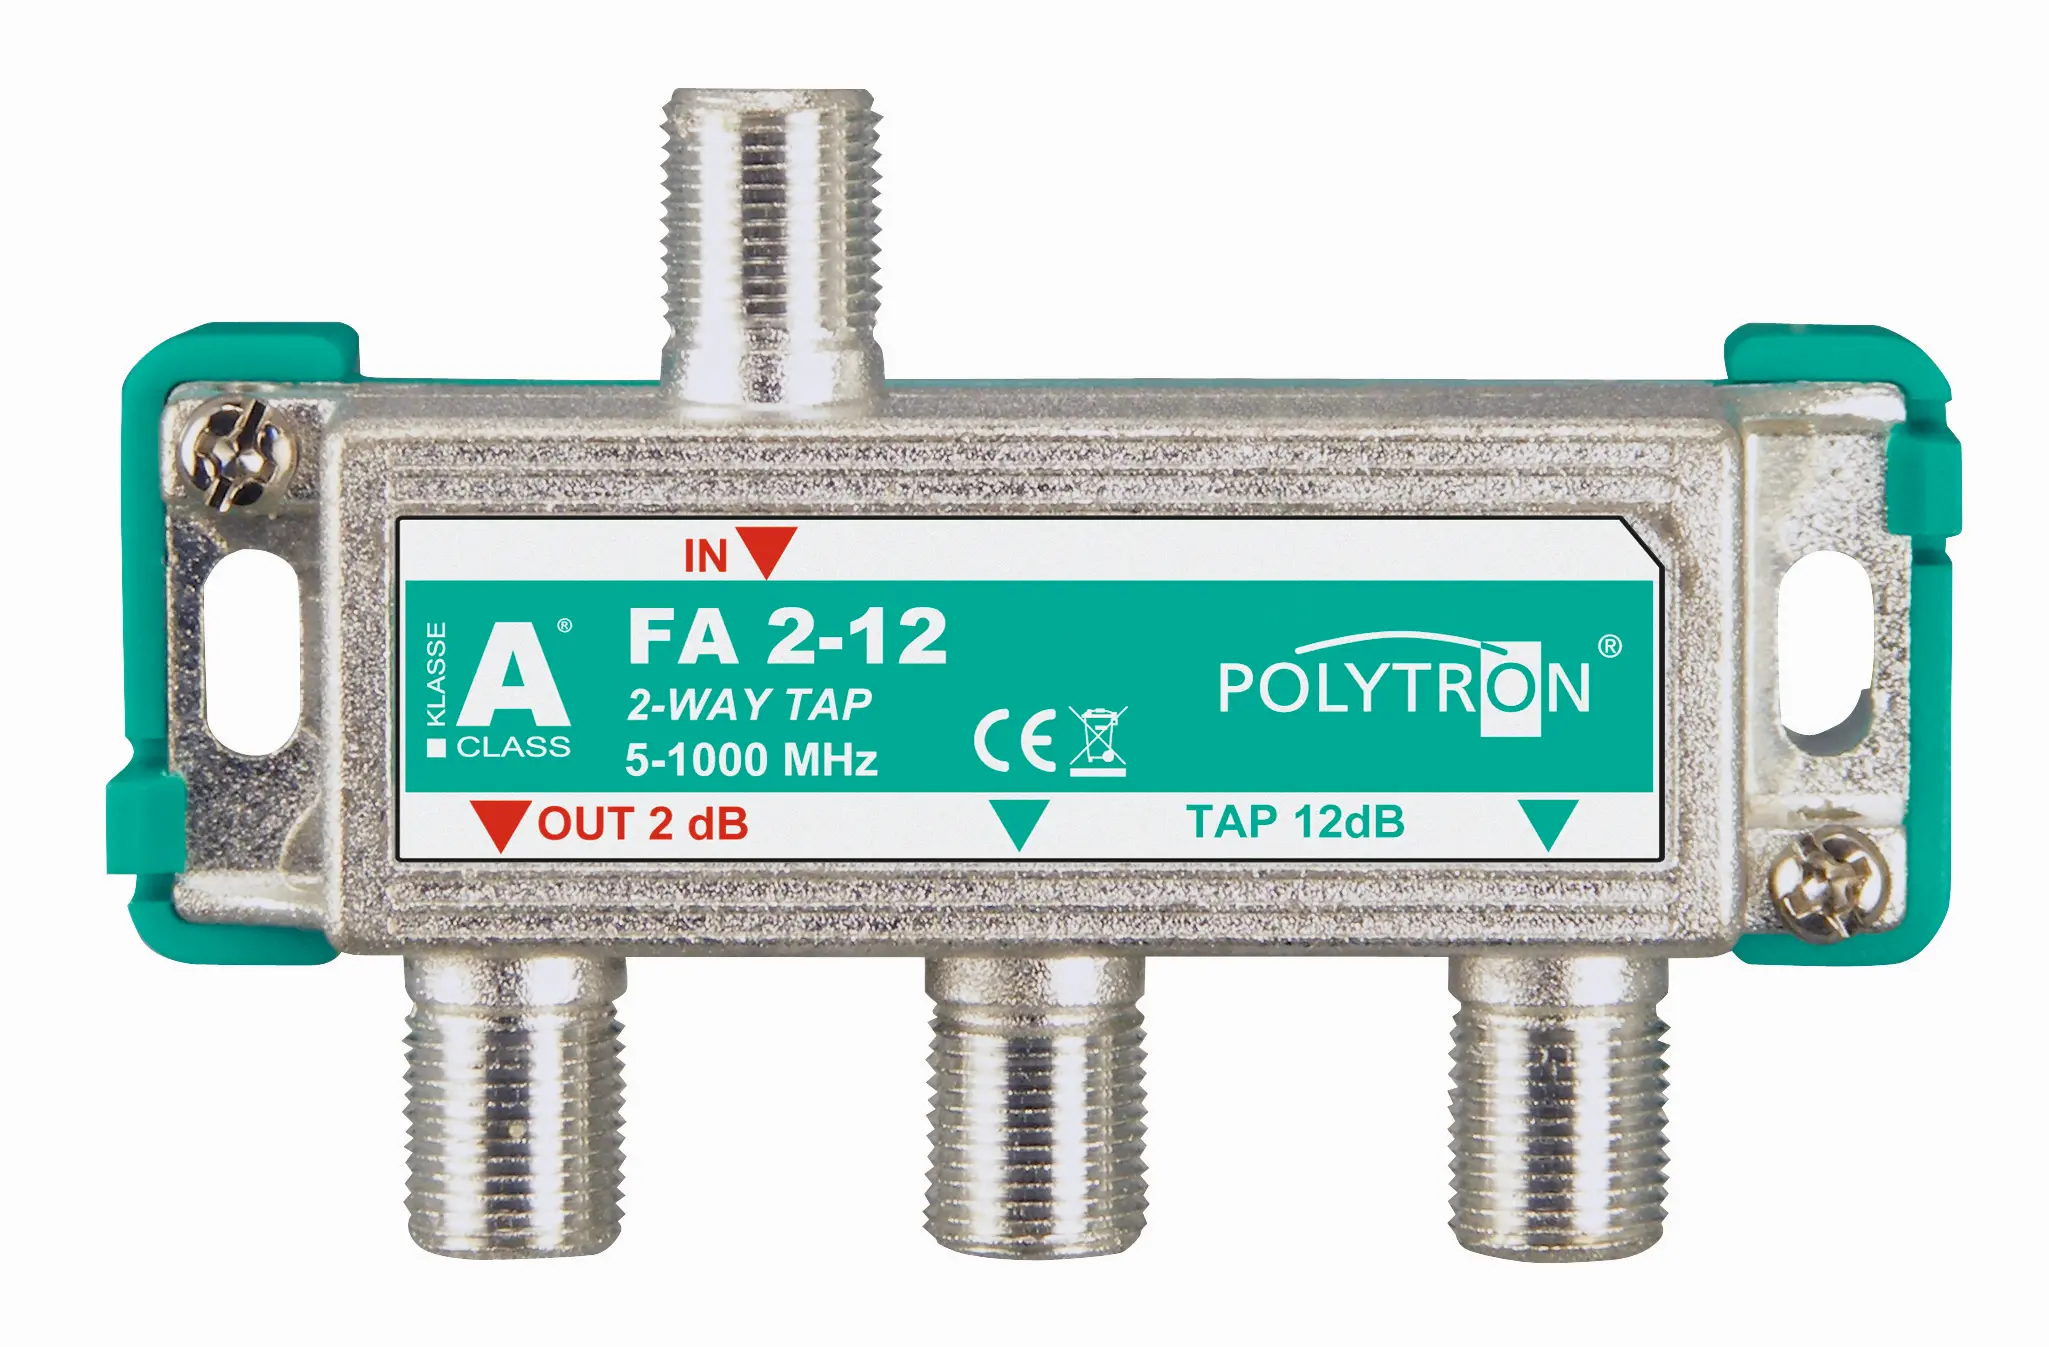 Odgałęźnik Polytron Tap 2-krotny 12dB 5-1000 MHz FA 2-12